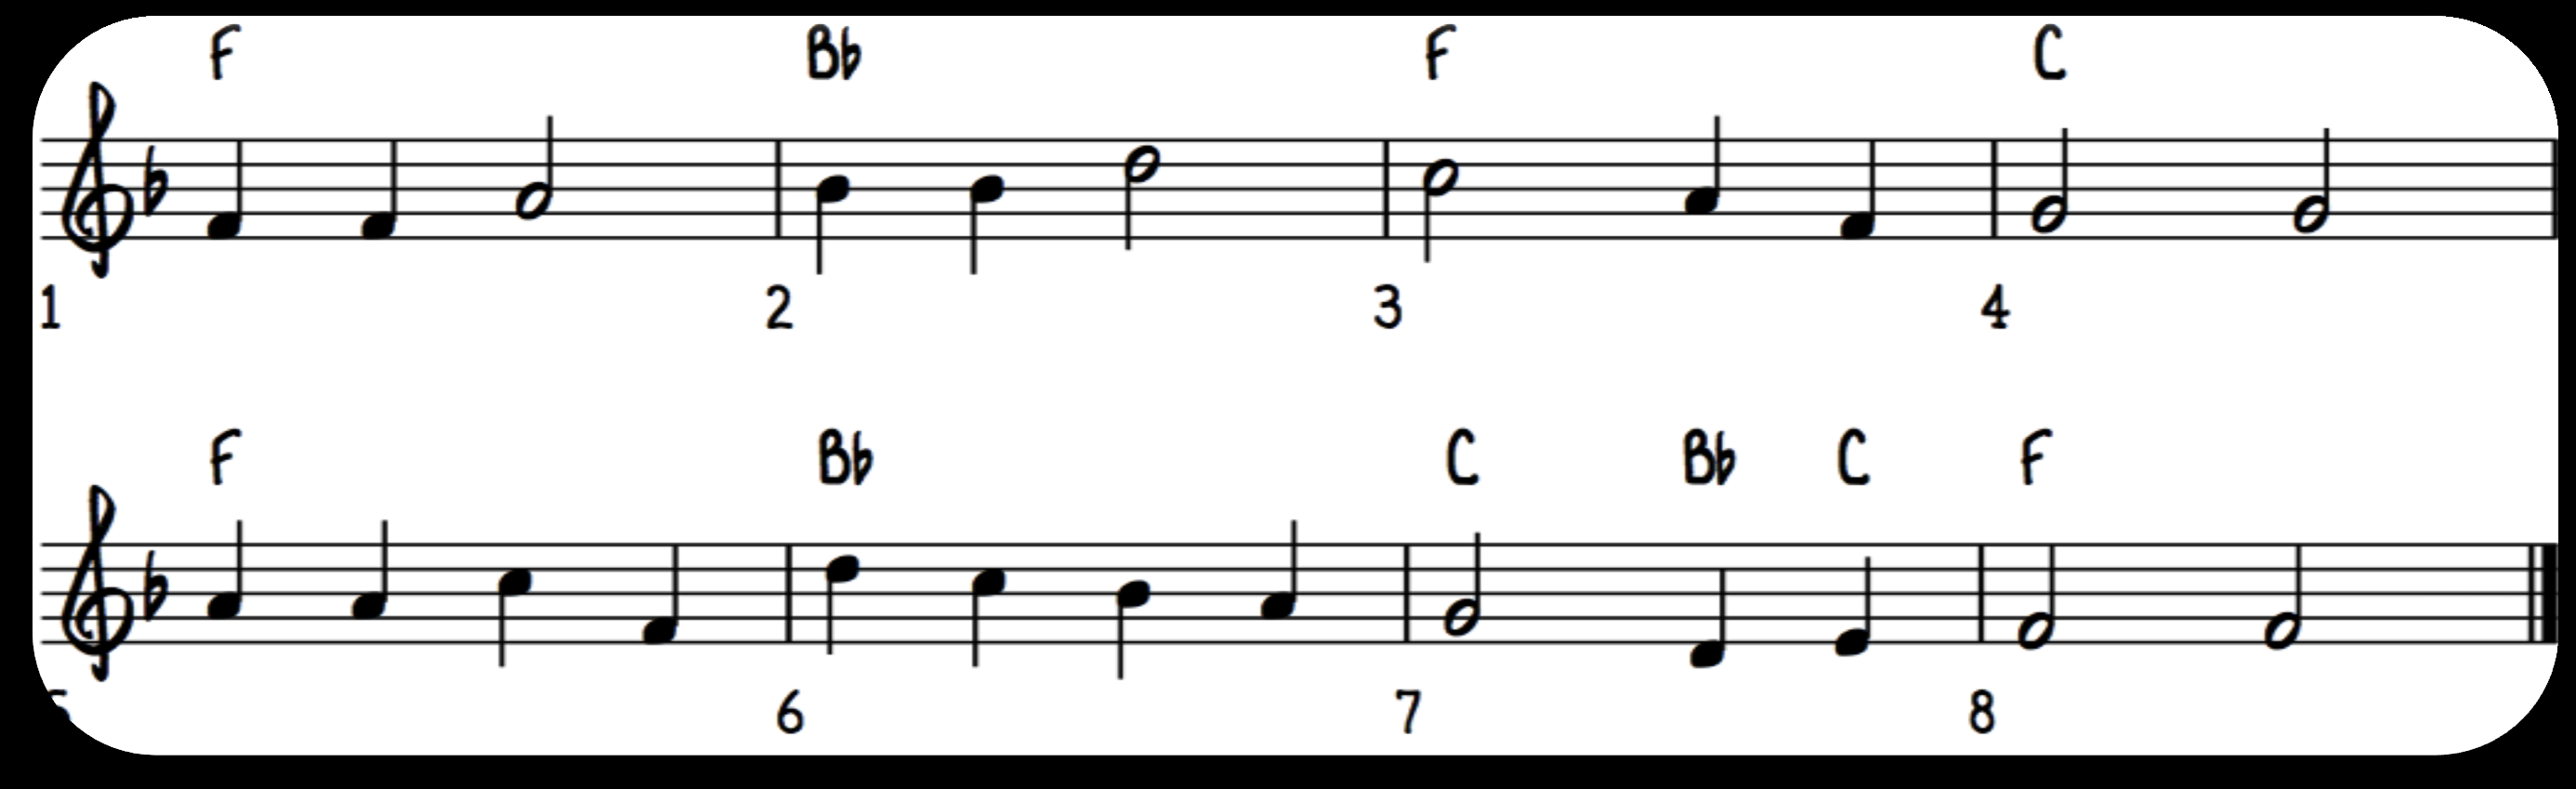 melodien: Figur 9: Melodien